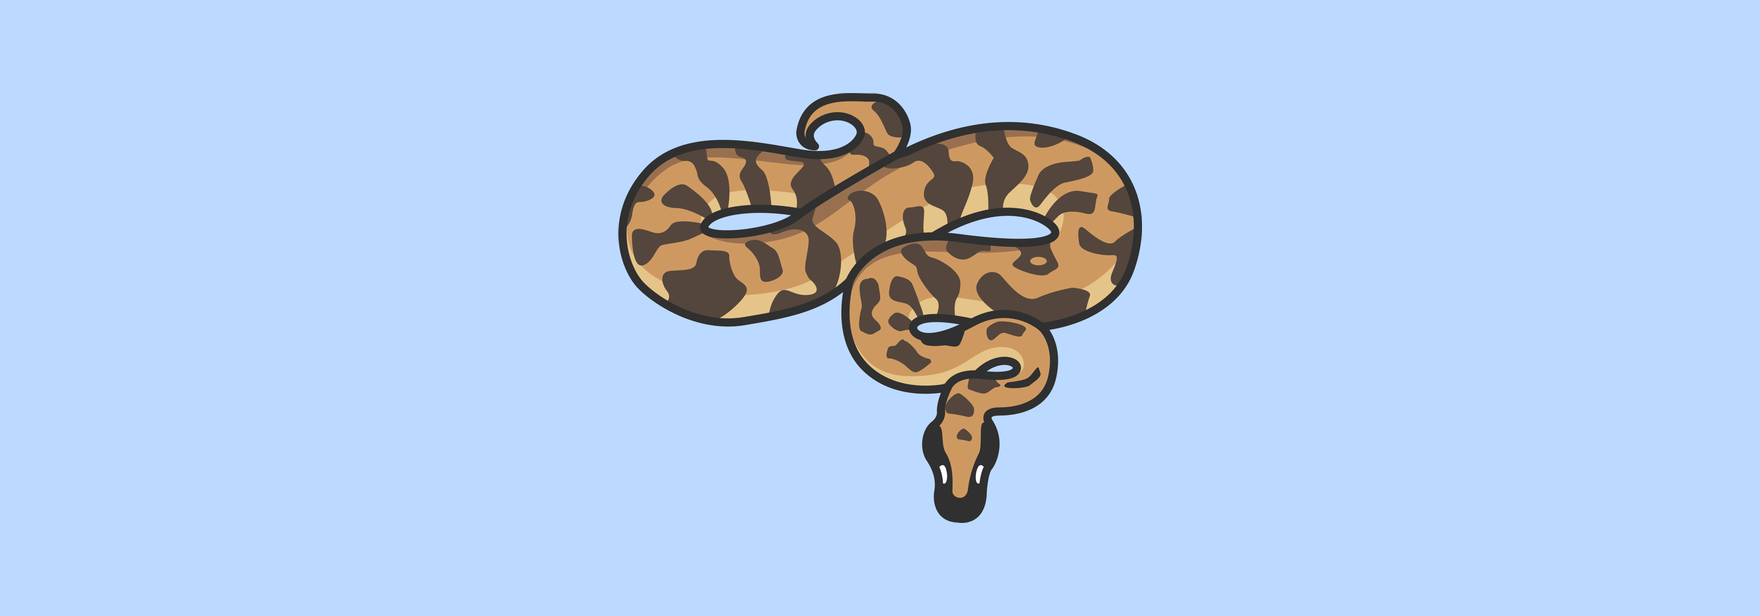 10 полезных Python библиотек, о которых вы не слышали